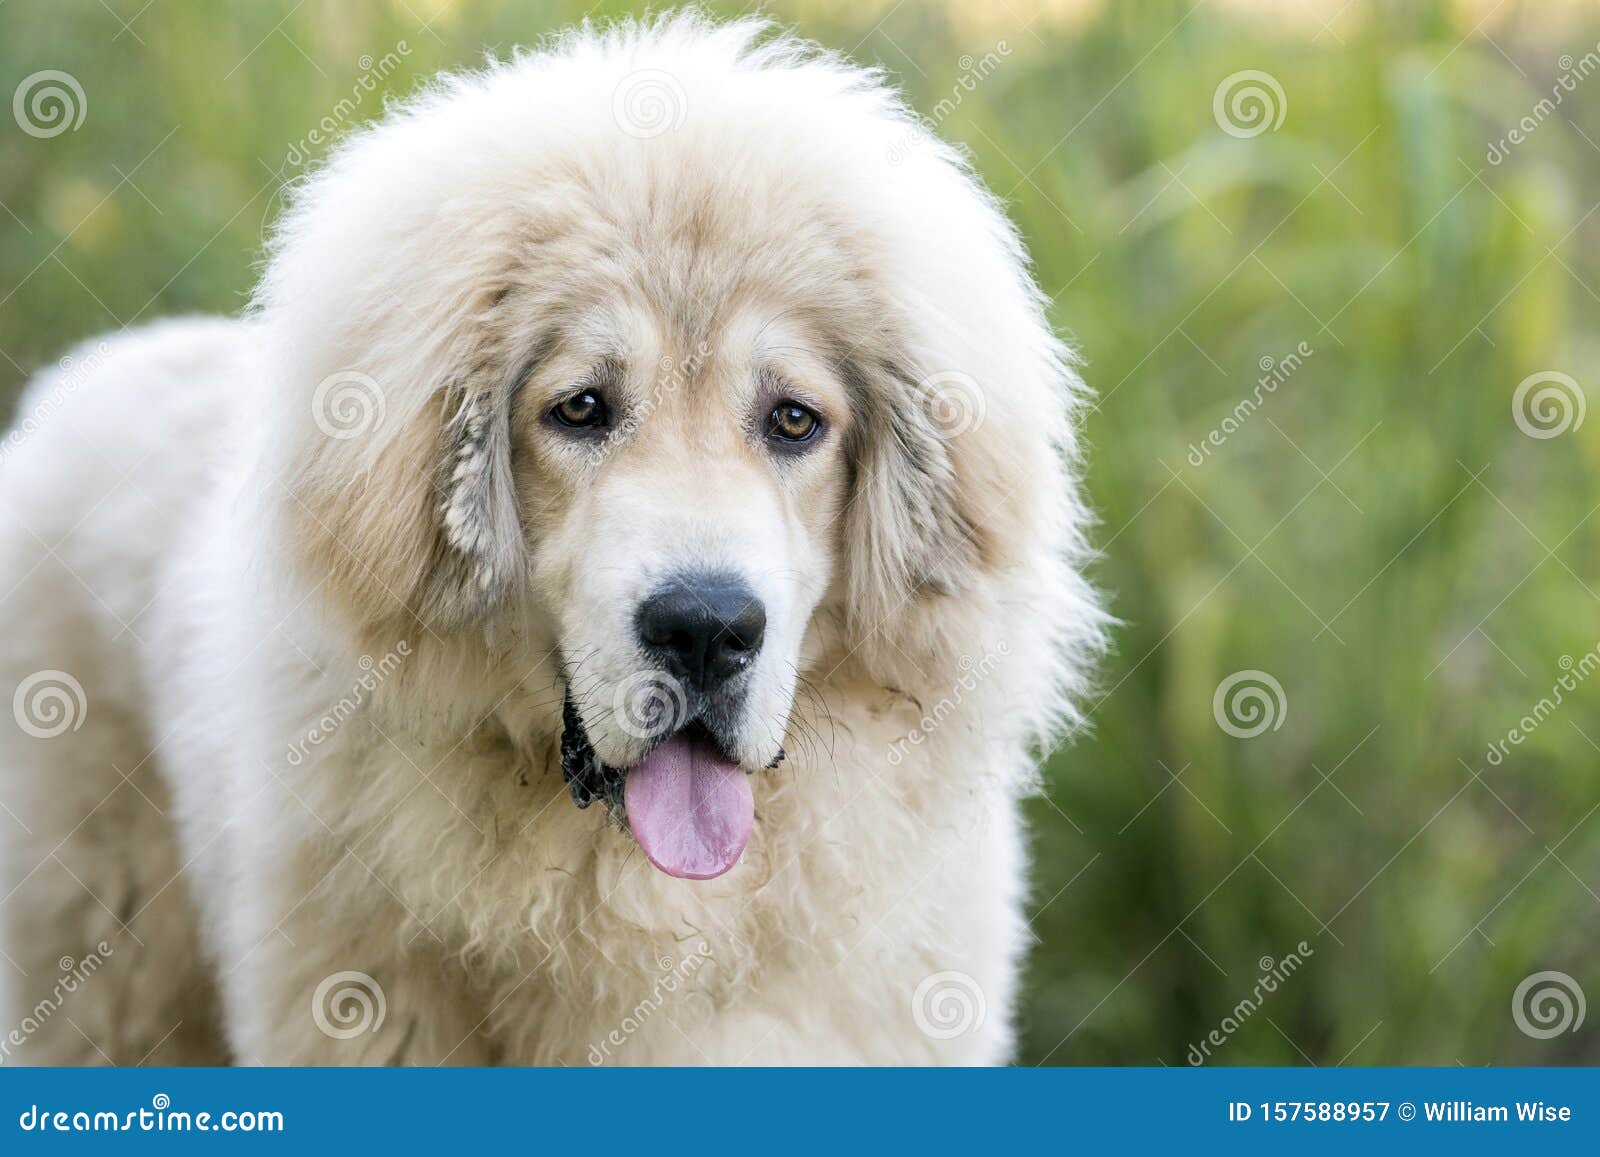 White Fluffy Tibetan Mastiff Mix Breed Dog Adoption Rescue Photo Stock Image Image Of Humane Society 157588957